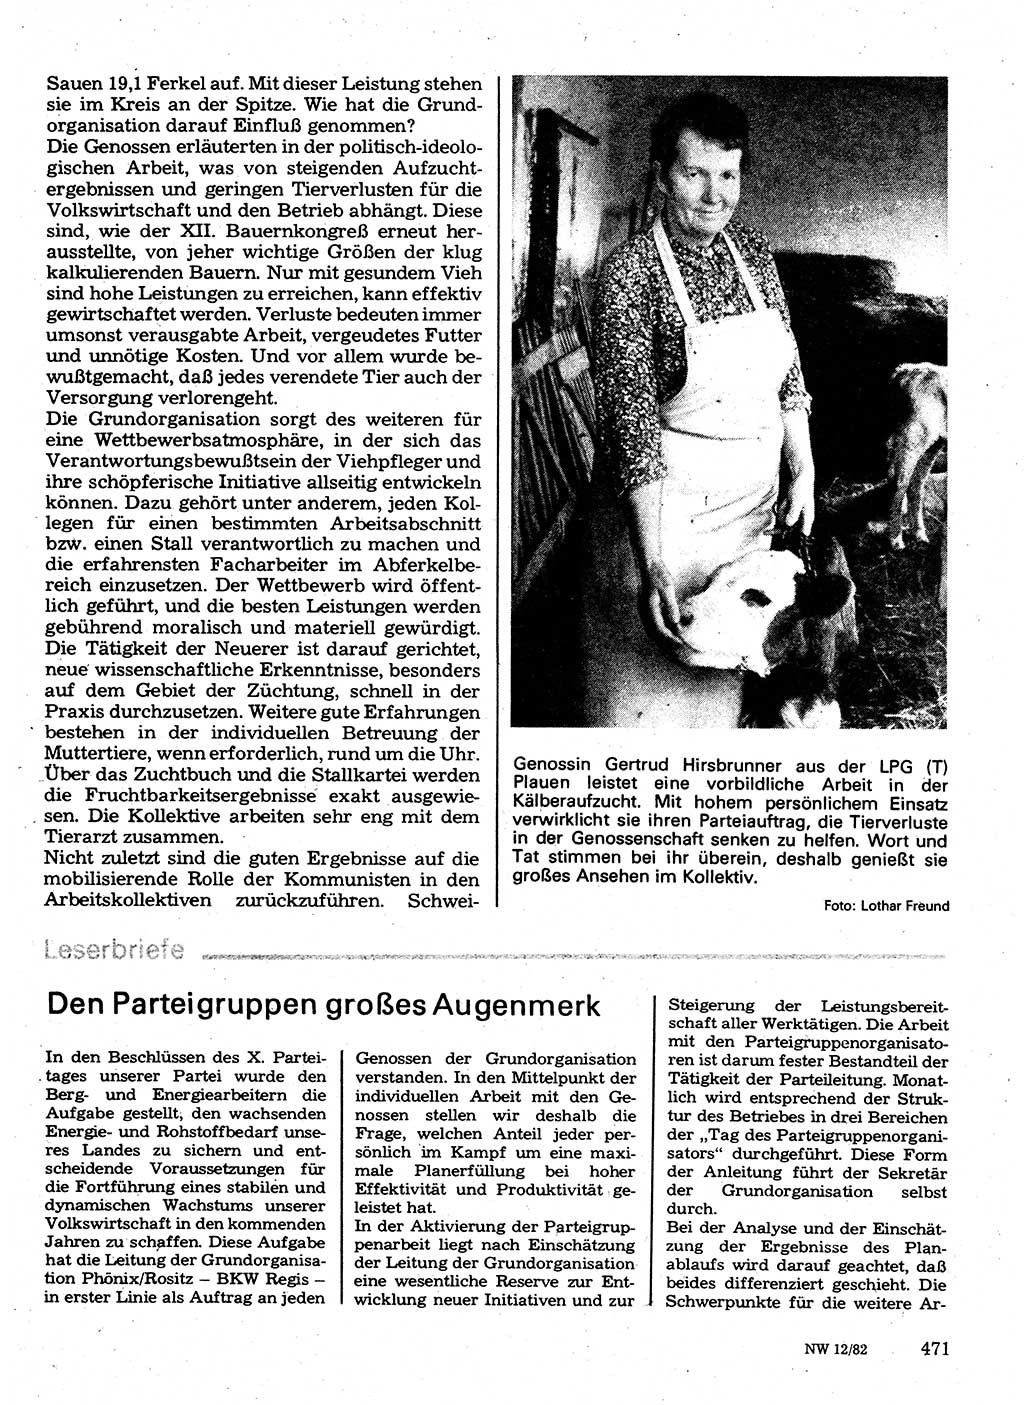 Neuer Weg (NW), Organ des Zentralkomitees (ZK) der SED (Sozialistische Einheitspartei Deutschlands) für Fragen des Parteilebens, 37. Jahrgang [Deutsche Demokratische Republik (DDR)] 1982, Seite 471 (NW ZK SED DDR 1982, S. 471)